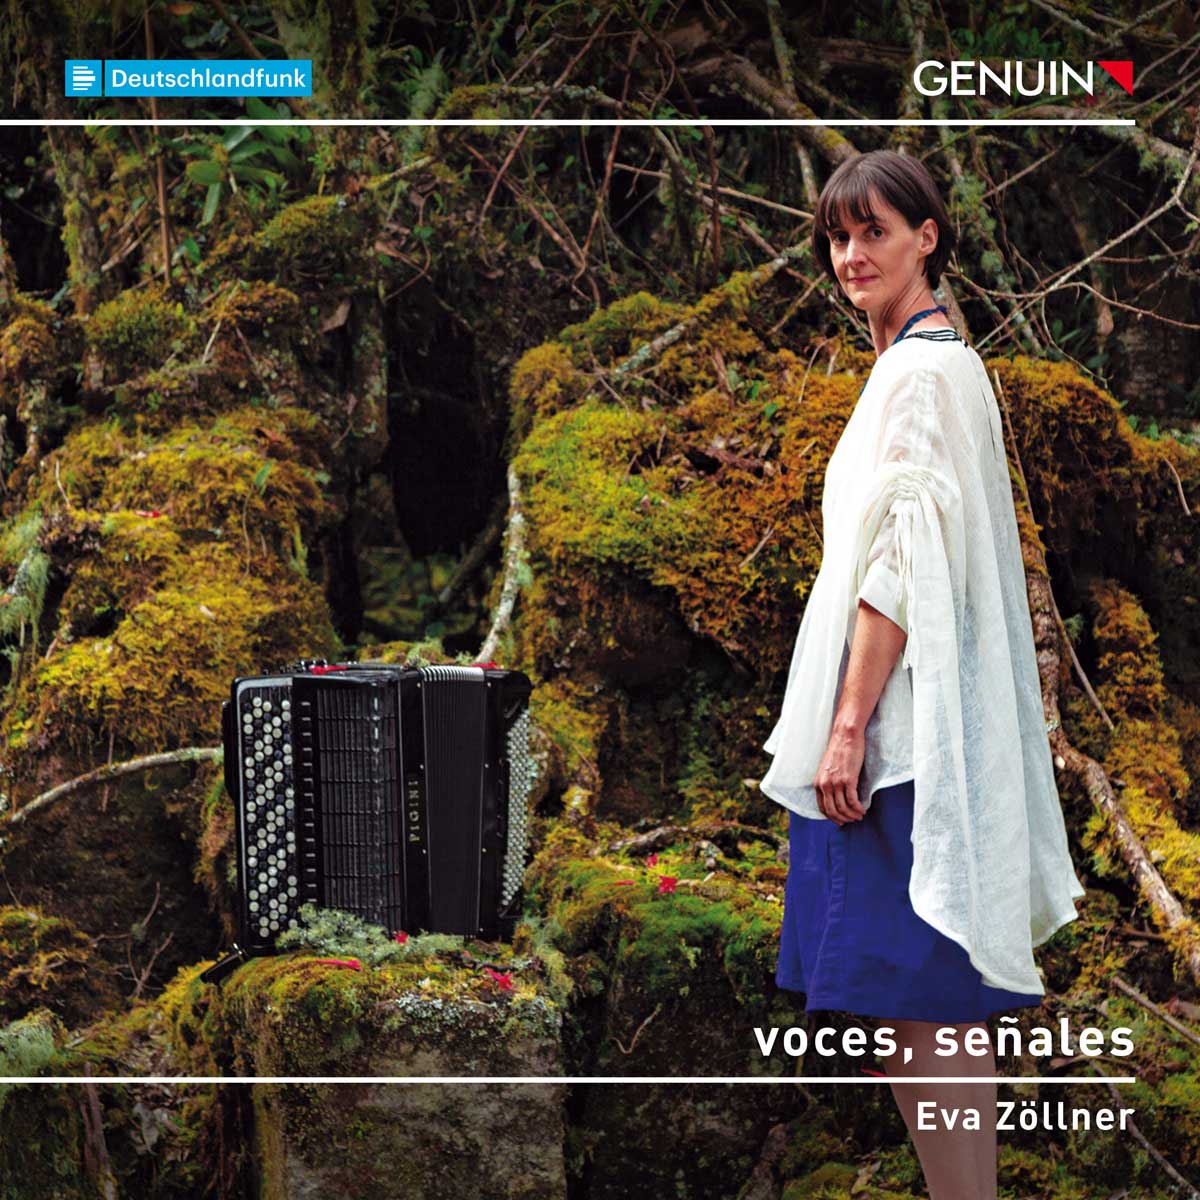 CD album cover 'voces, señales' (GEN 23838) with Eva Zöllner